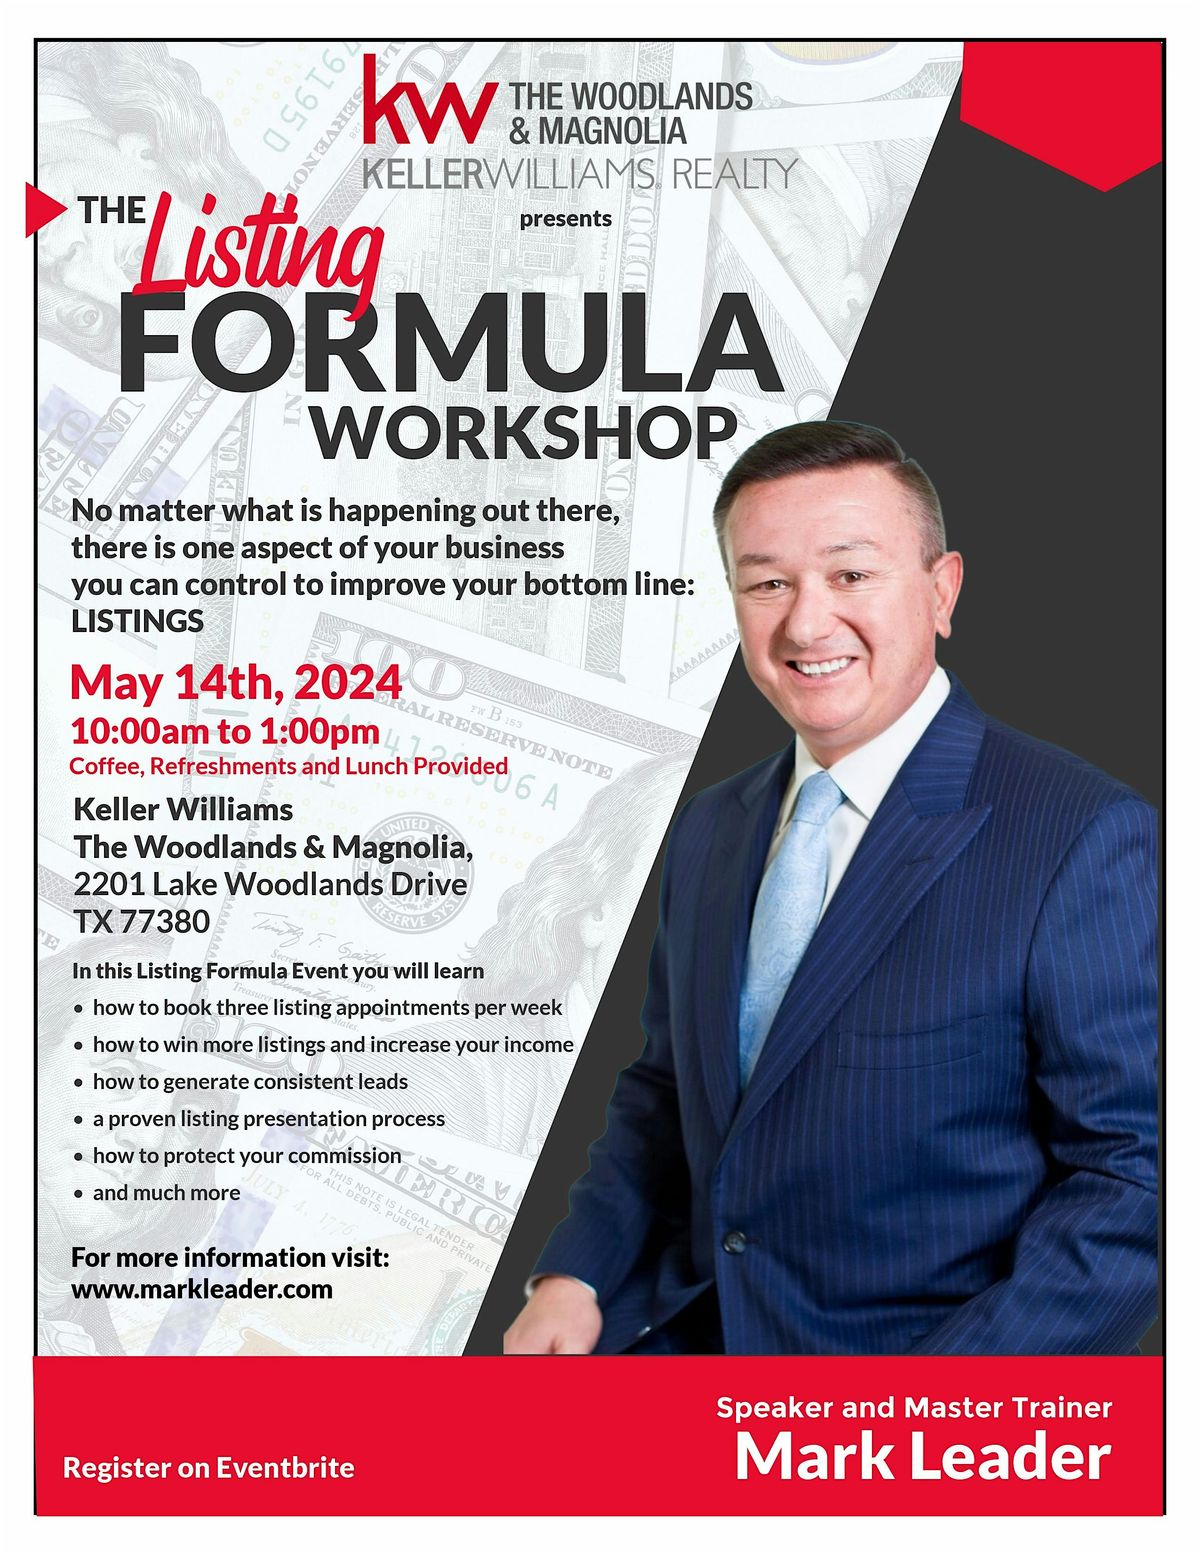 The Listing Formula Workshop